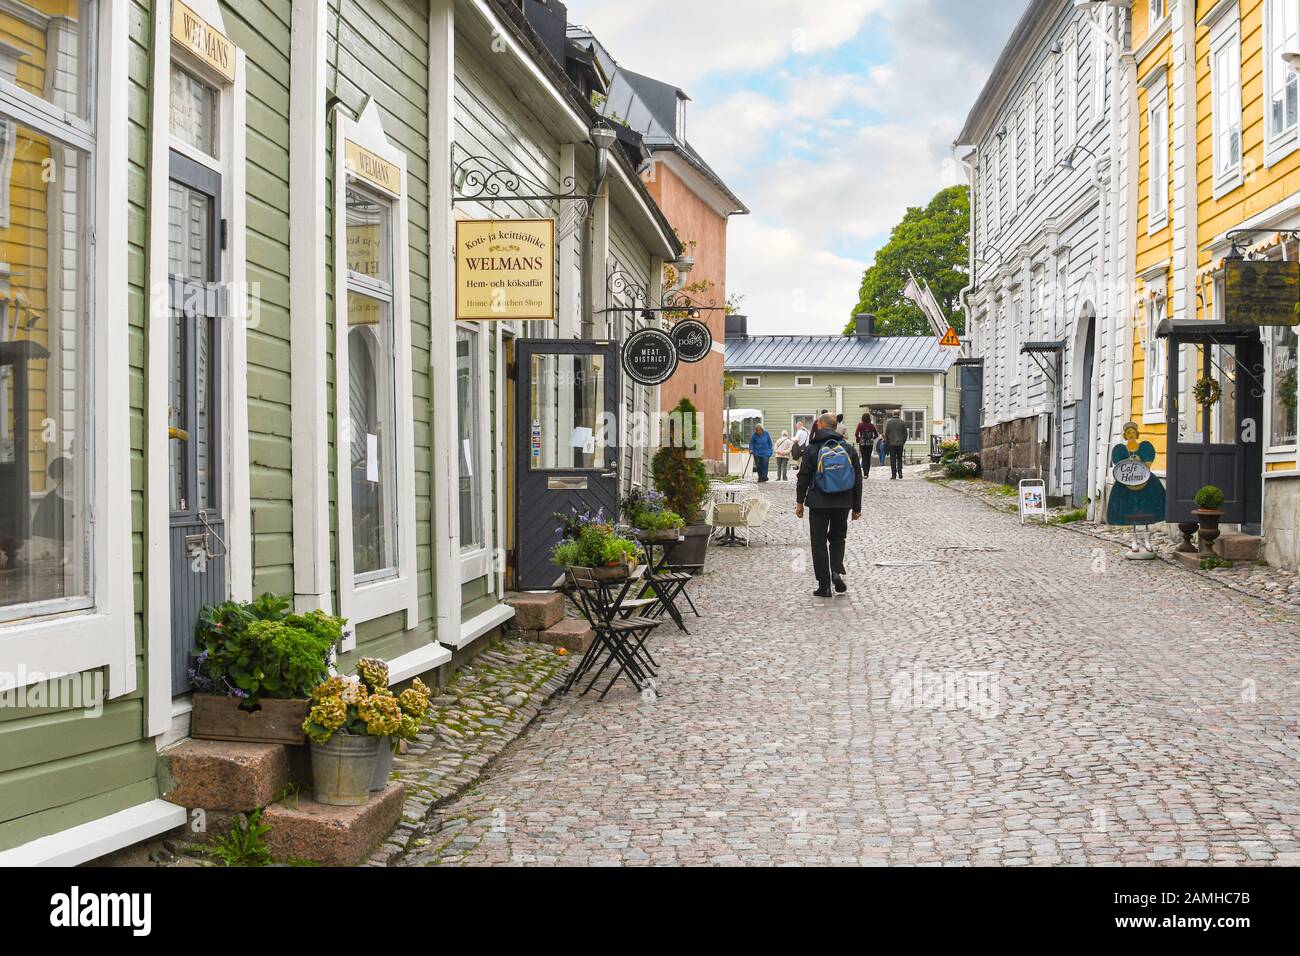 I turisti, tra cui un uomo con uno zaino, camminano per le strade acciottolate nello storico borgo medievale di Porvoo, in Finlandia. Foto Stock